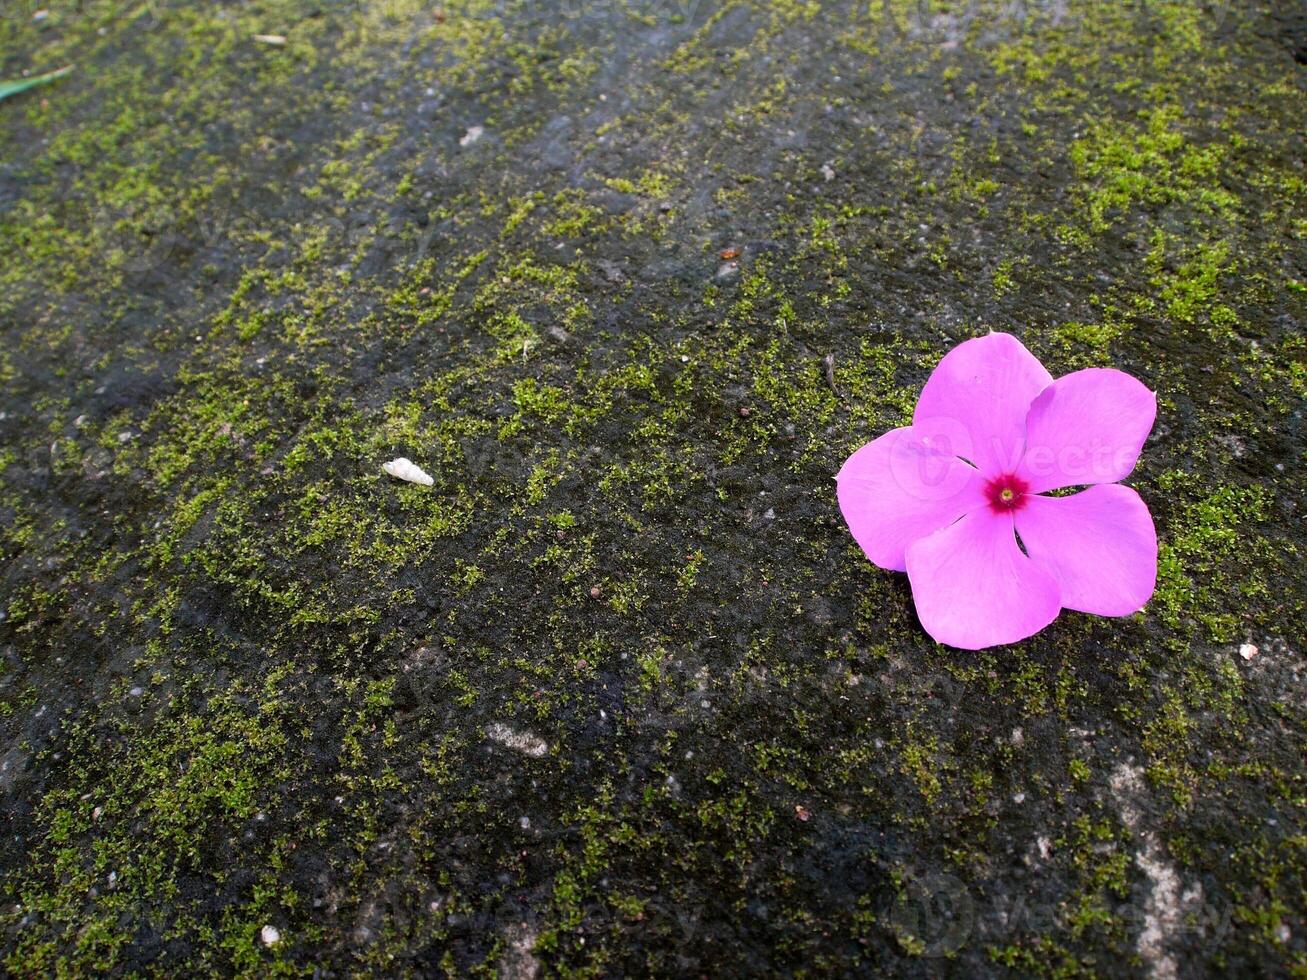 rosa fiori fioritura nel il molla, bellissimo rosa fiori. foto